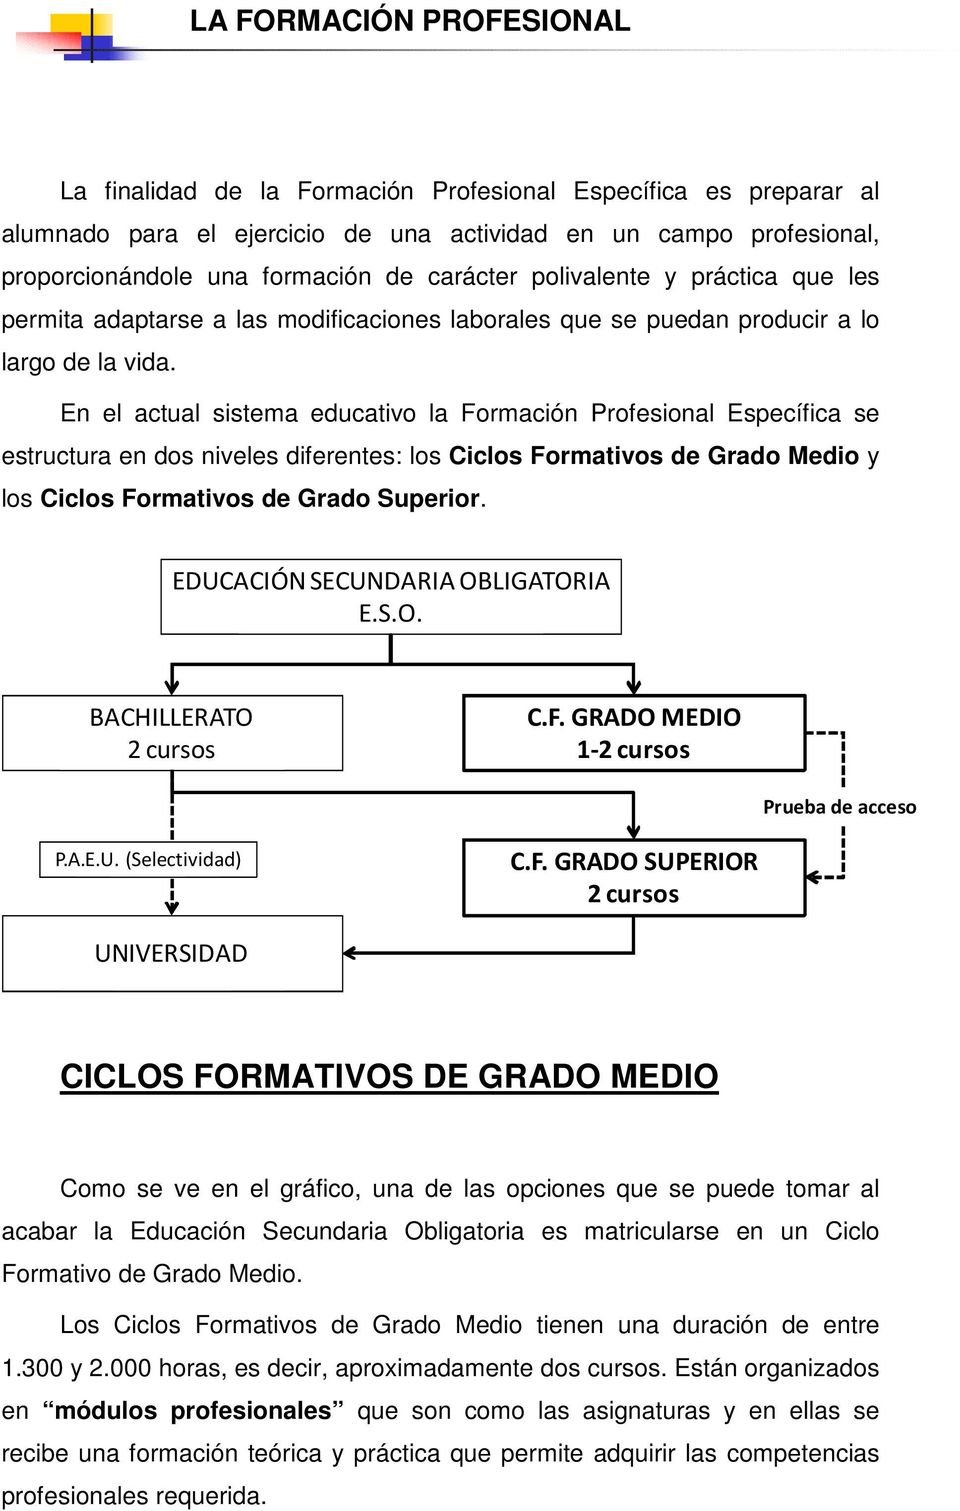 En el actual sistema educativo la Formación Profesional Específica se estructura en dos niveles diferentes: los Ciclos Formativos de Grado Medio y los Ciclos Formativos de Grado Superior.